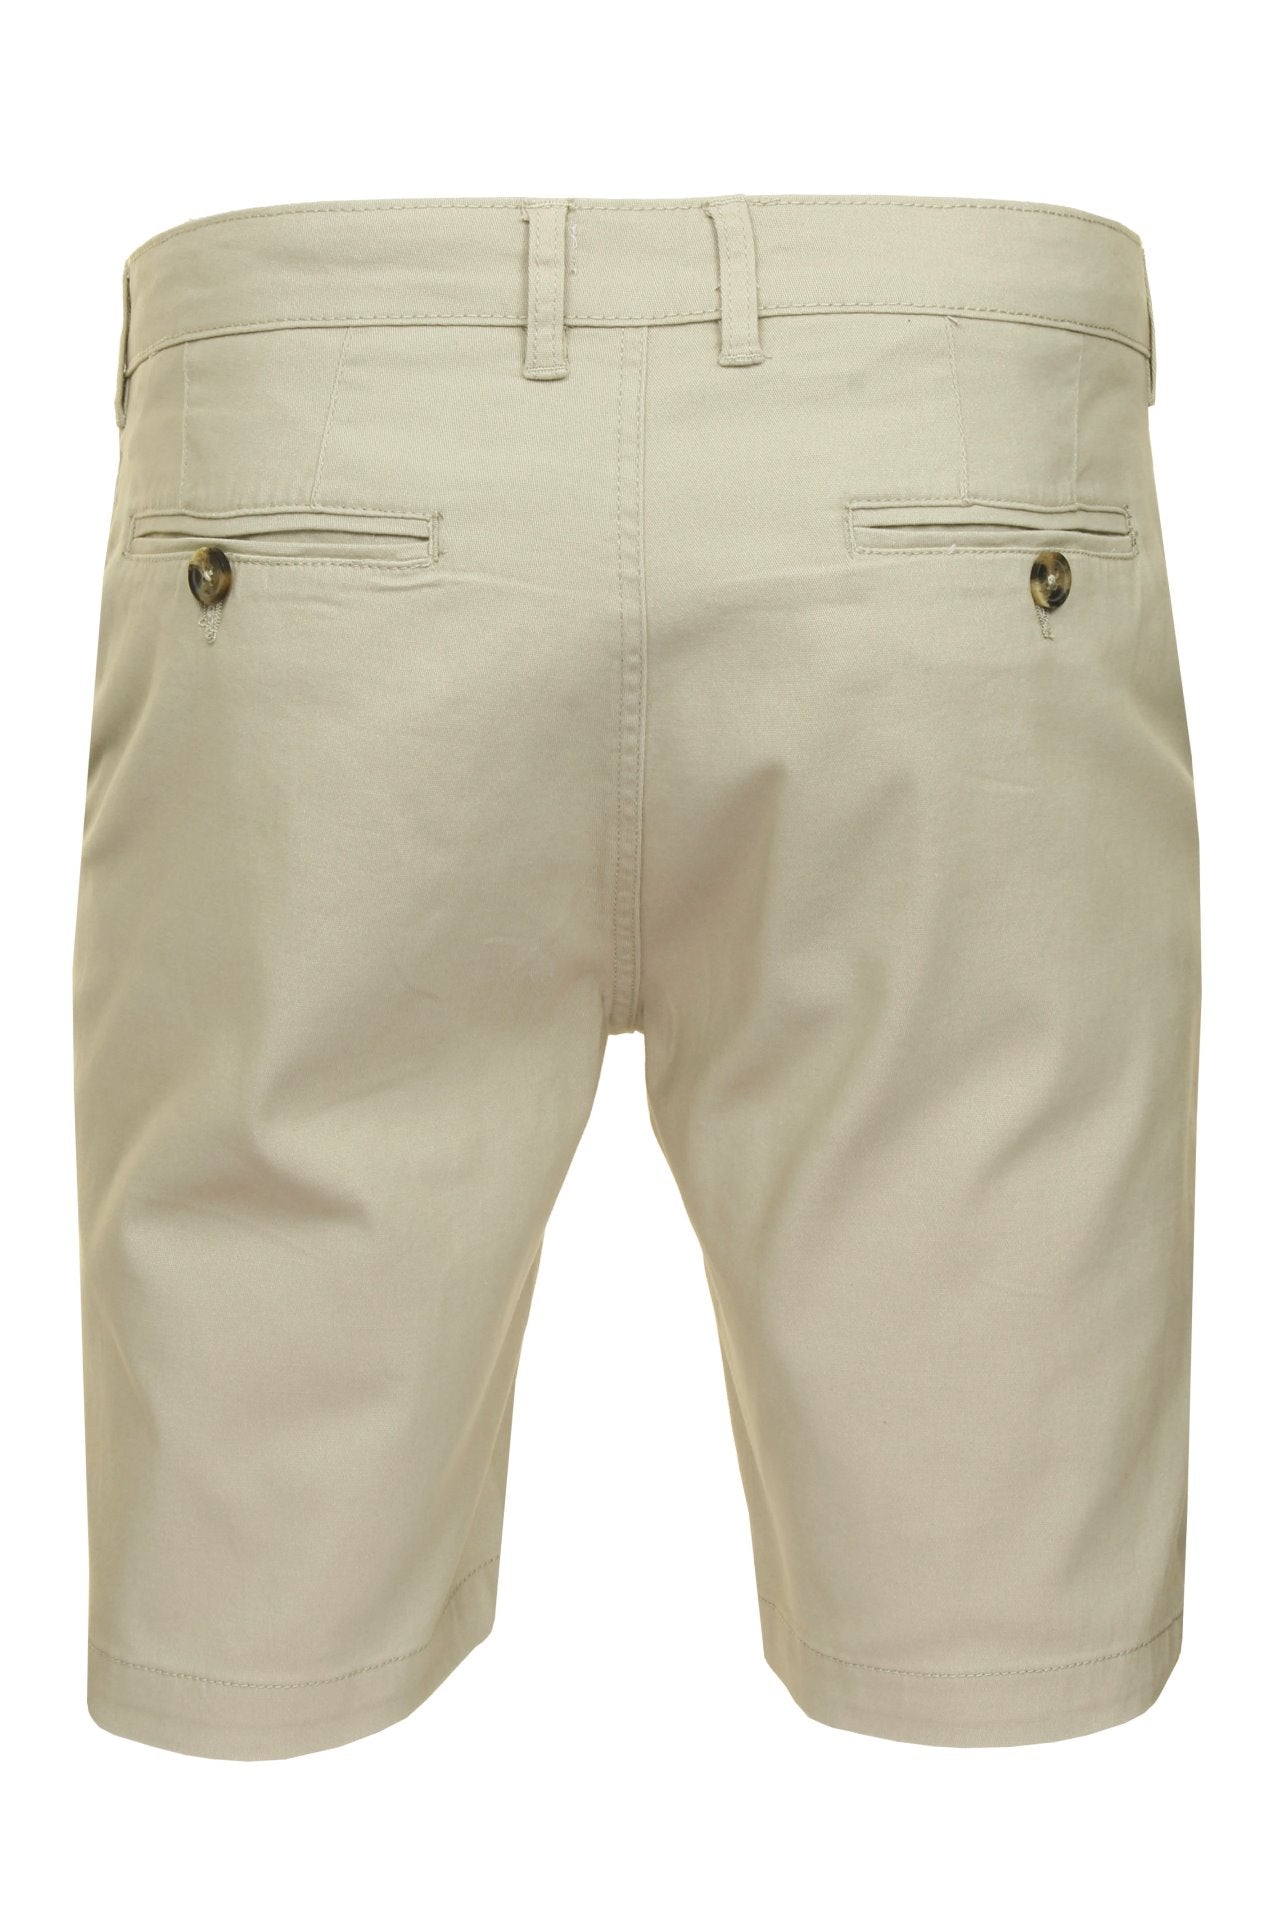 Xact Chino Shorts Mens Soft Feel Cotton Fashion Garment-3